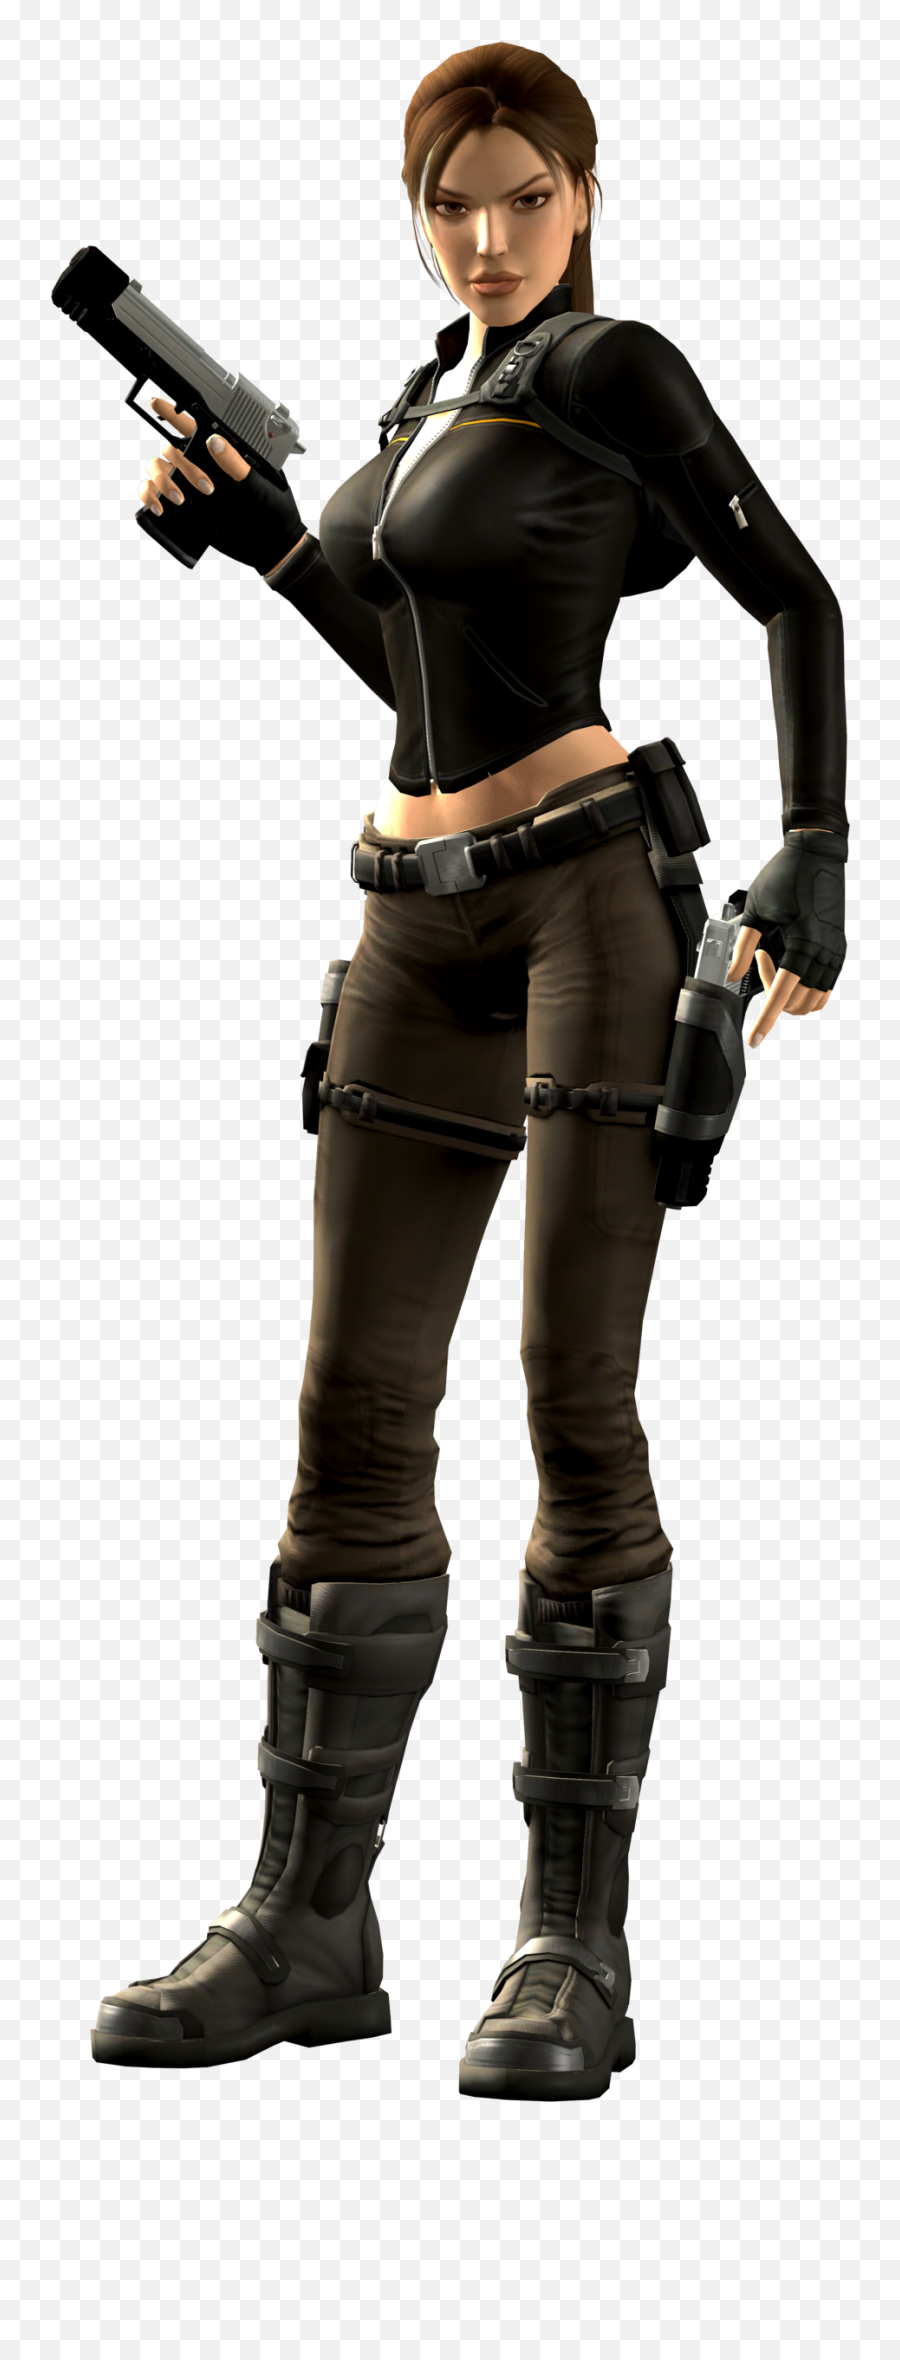 Lara Croft Png - Lara Croft Png,Lara Croft Transparent